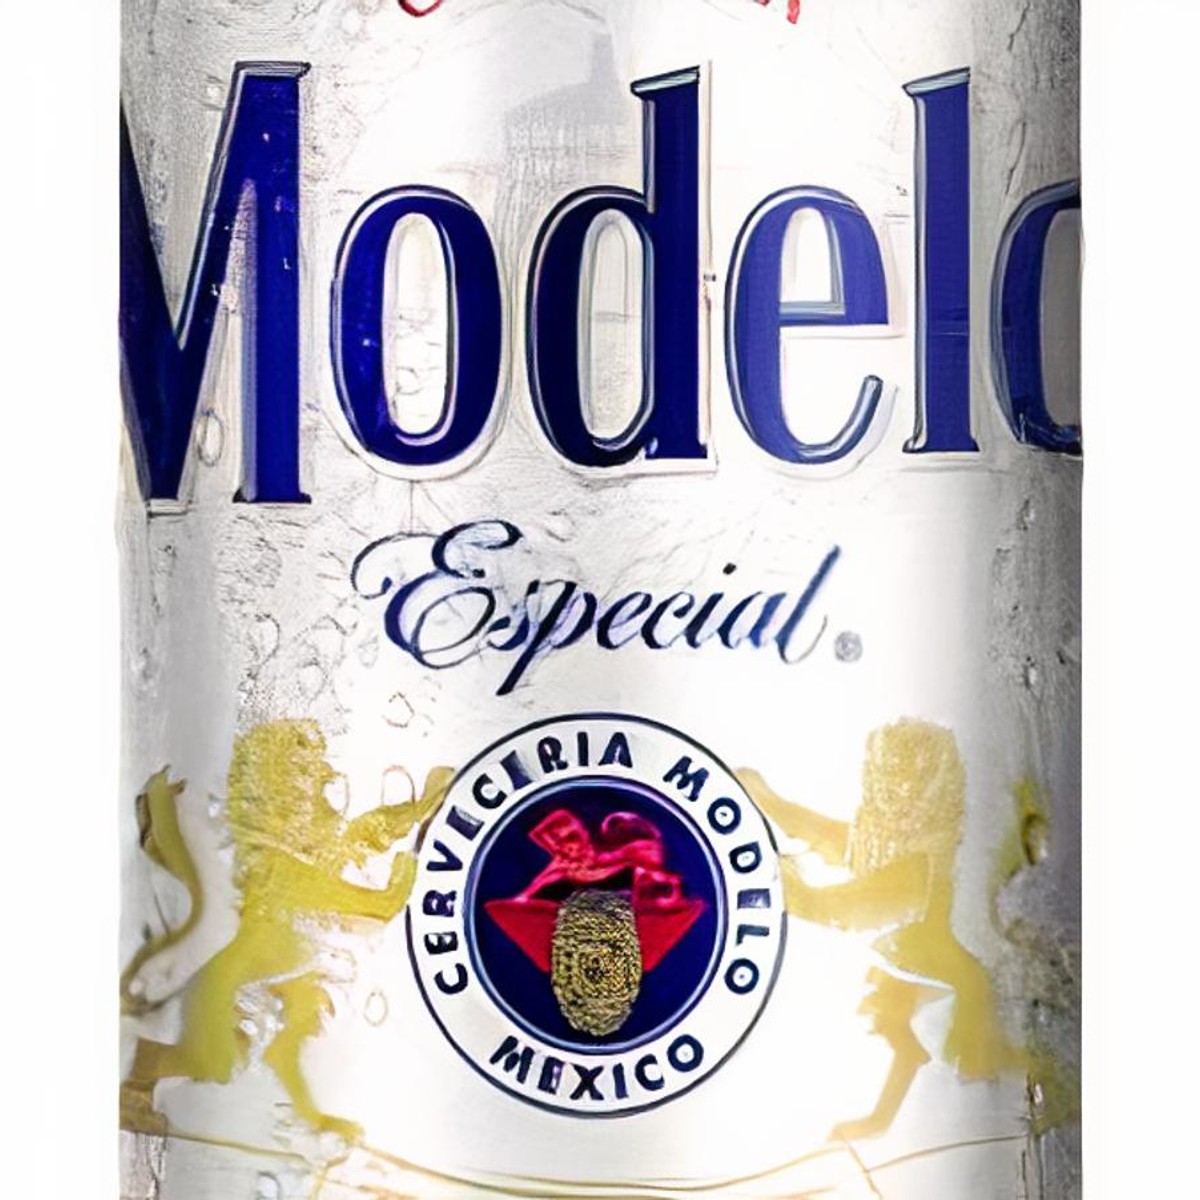 Modelo Especial Beer 24x355ml Case